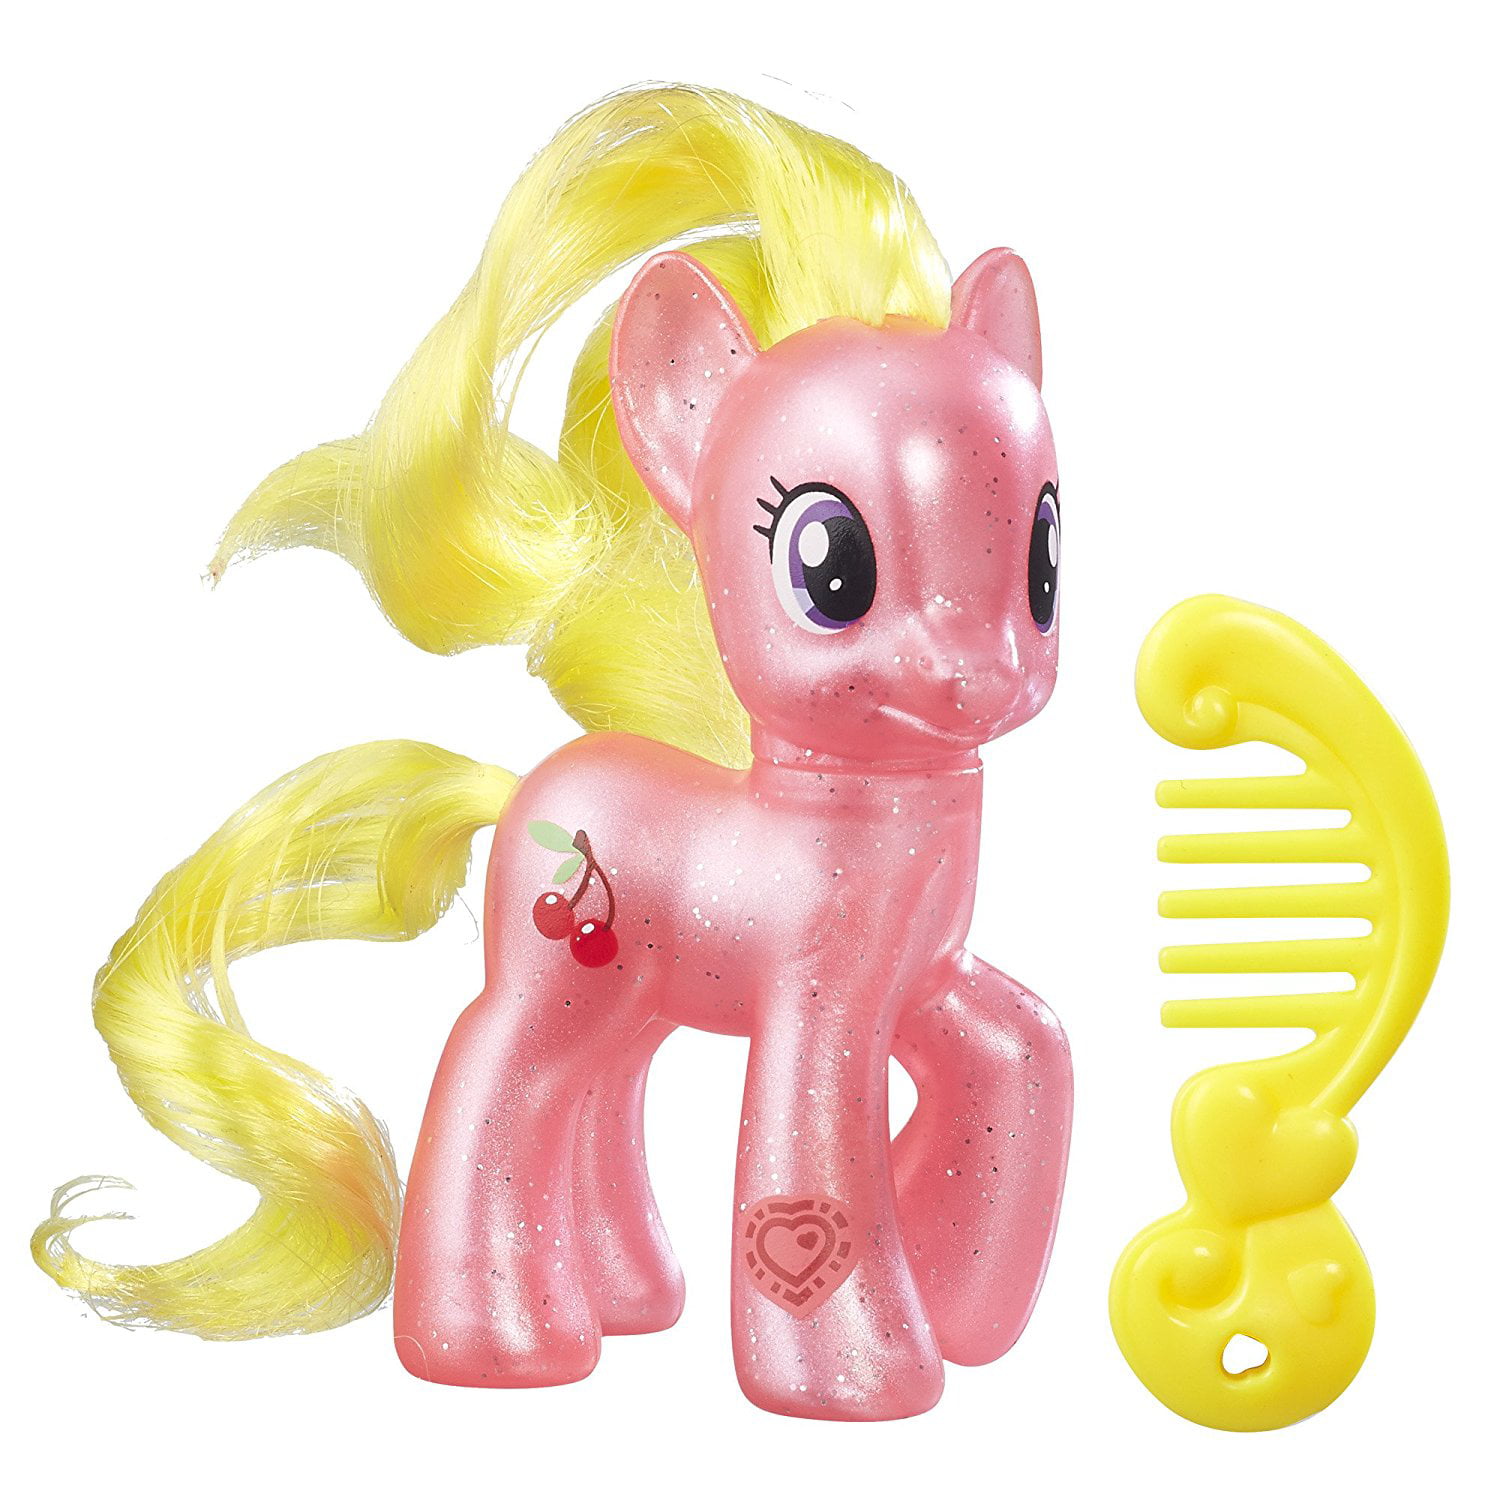 Литл пони с волосами. B3599    игрушка MLP пони (в ассорт.). My little Pony игрушки Хасбро. Черри Берри пони фигурка. Игрушка Hasbro MLP фигурки "пони-подружки".